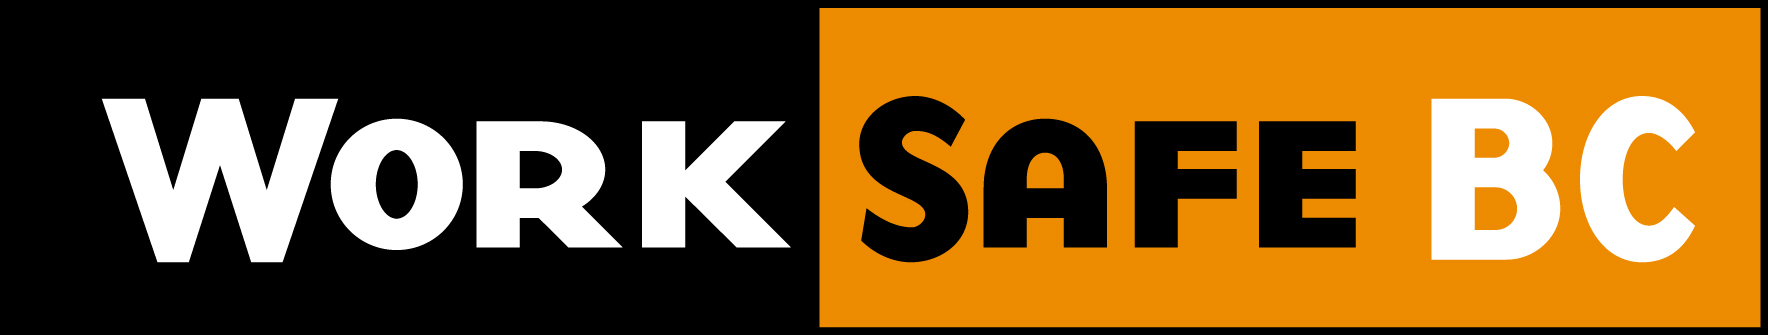 WorkSafeBC-logo-rgb.jpg